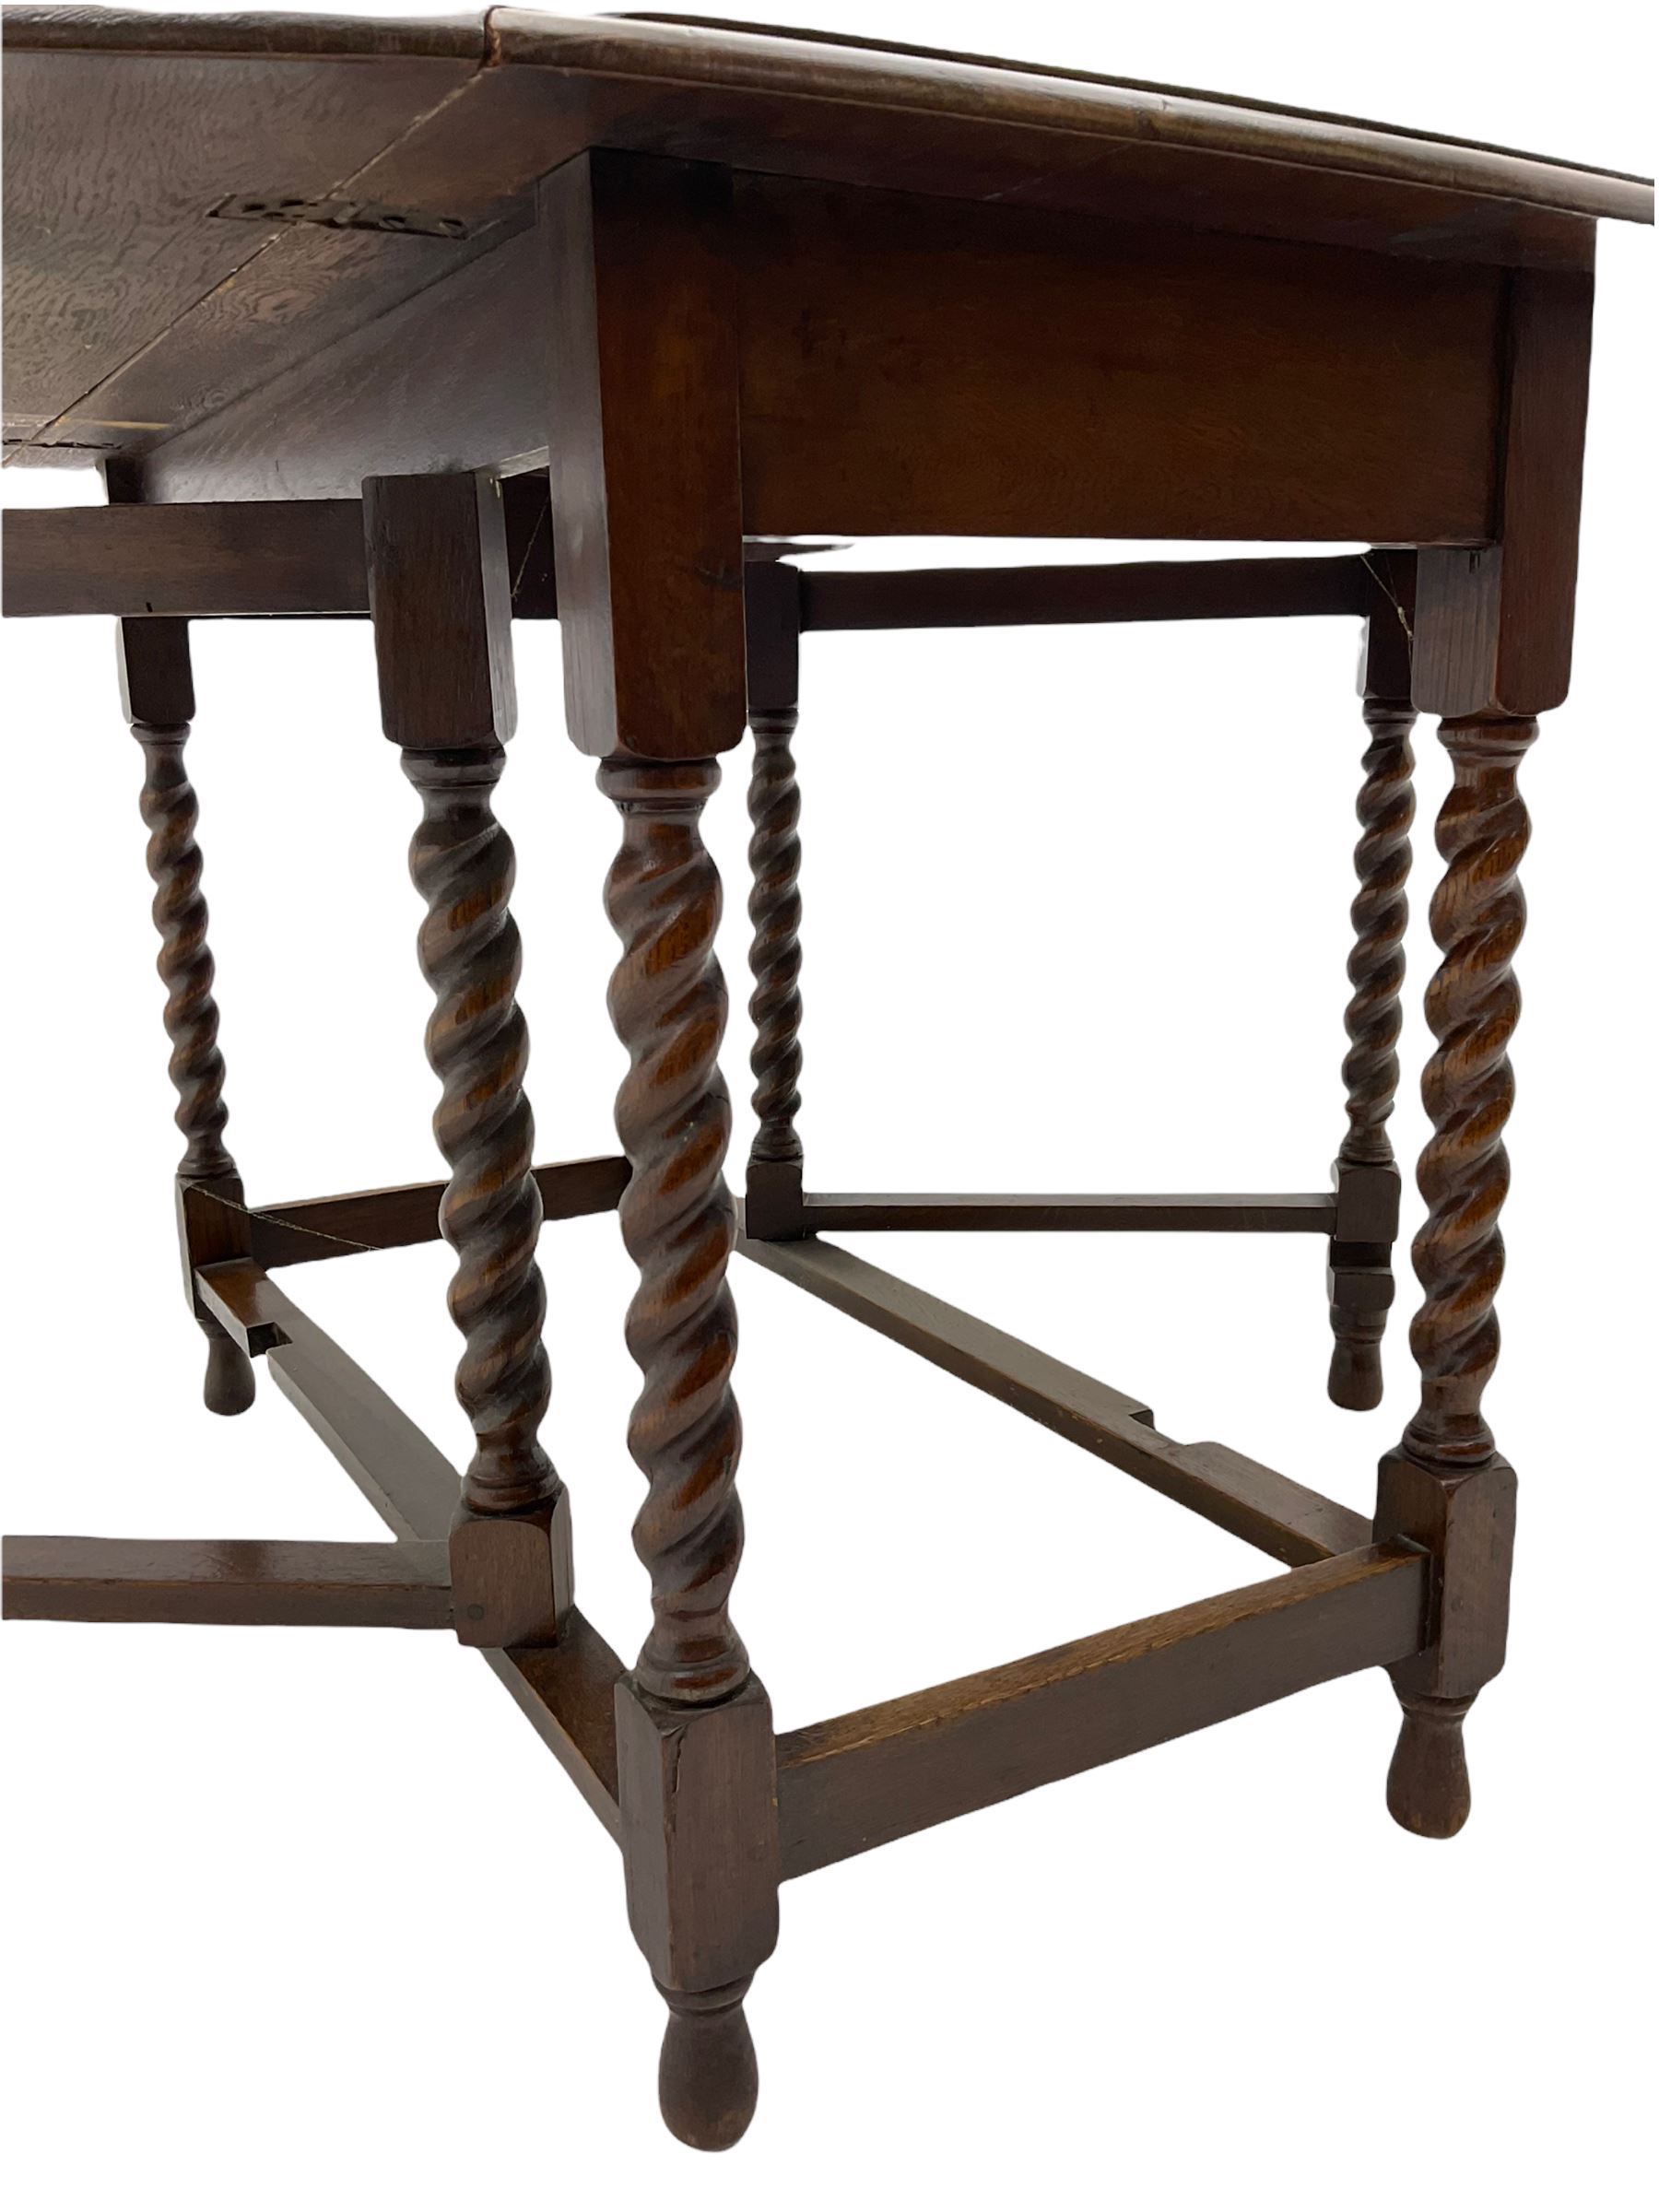 Early 20th century oak barley twist drop leaf dining table (105cm x 154cm - Image 11 of 24